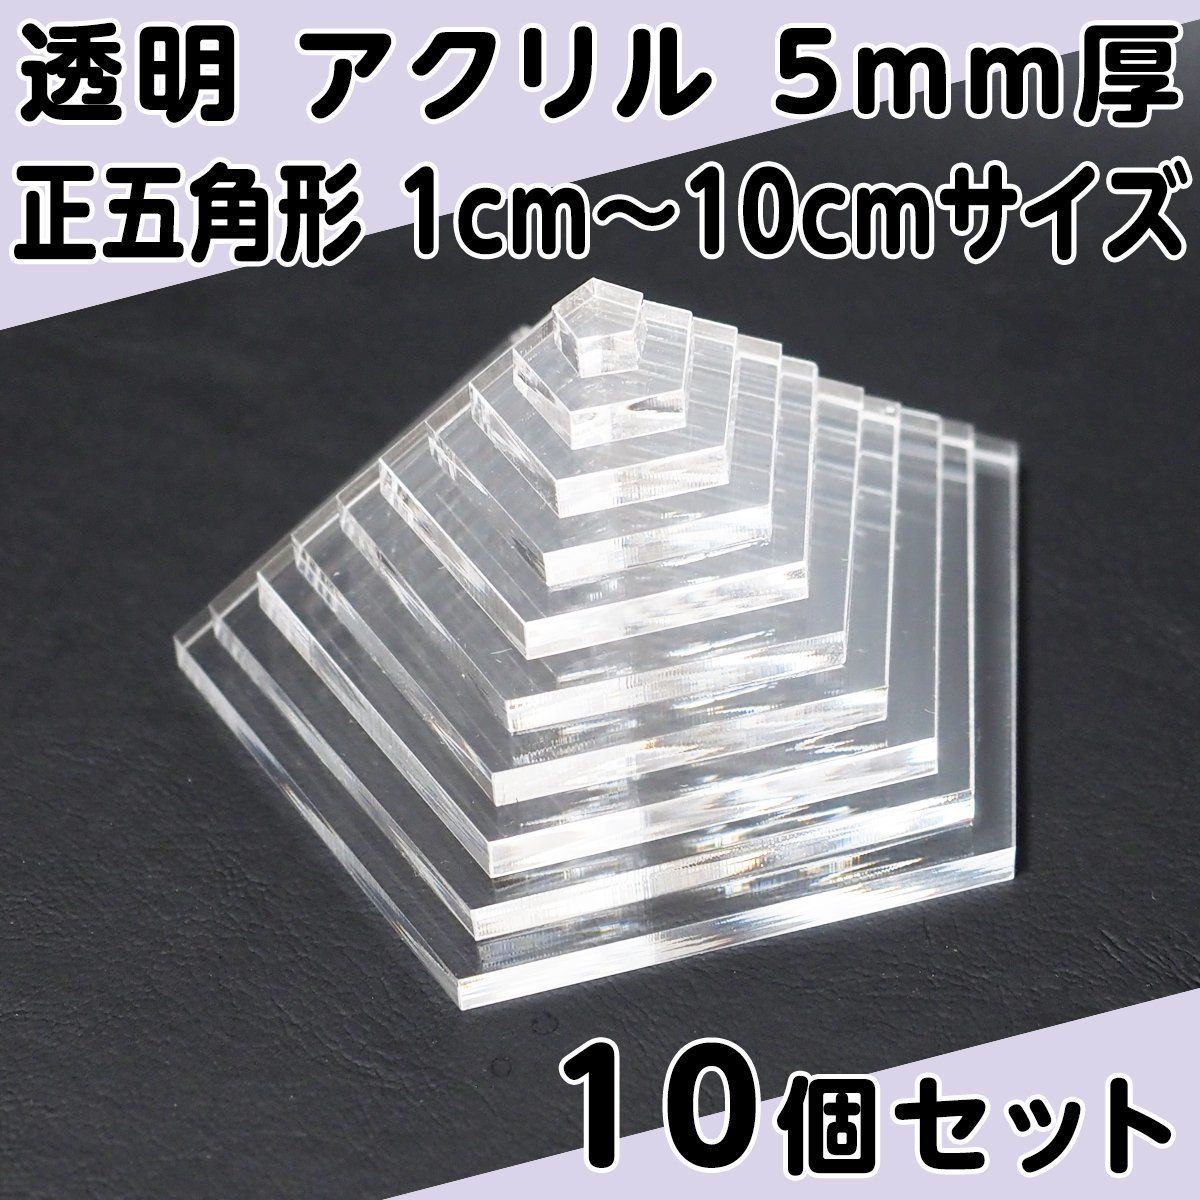 透明 アクリル 5mm厚 正五角形 6cmサイズ 10個セット